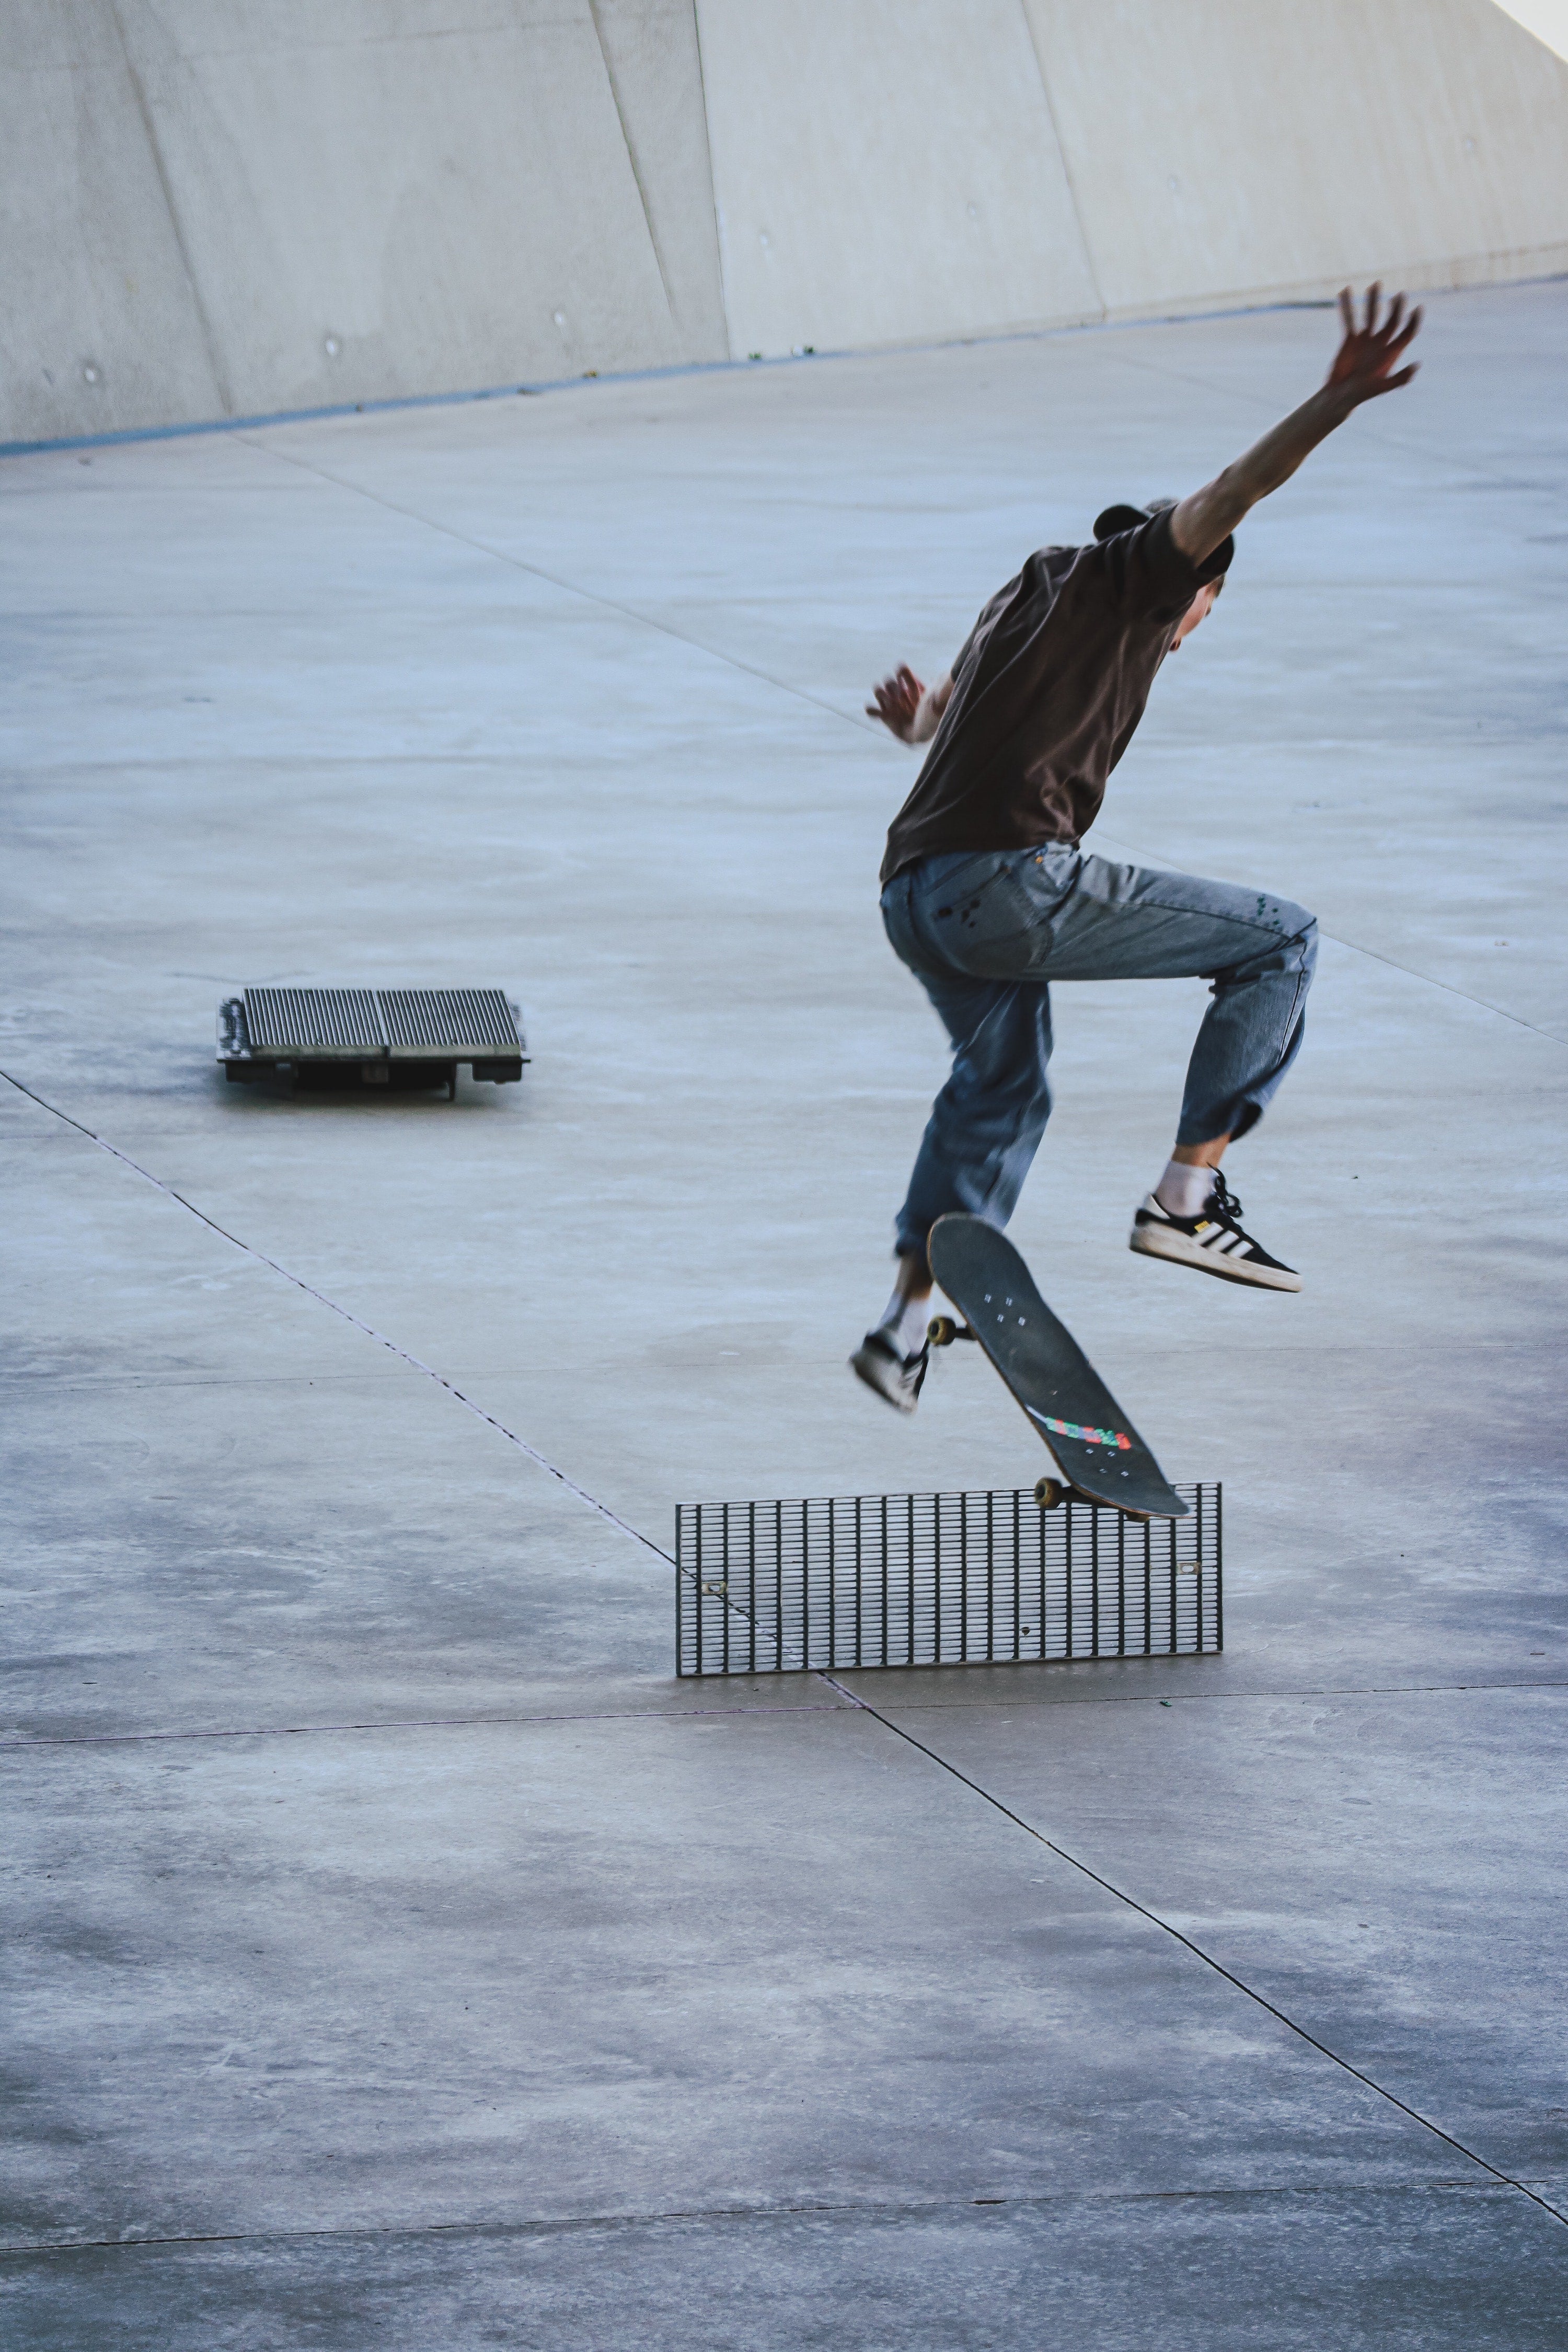 Skateboarder Doing Trick